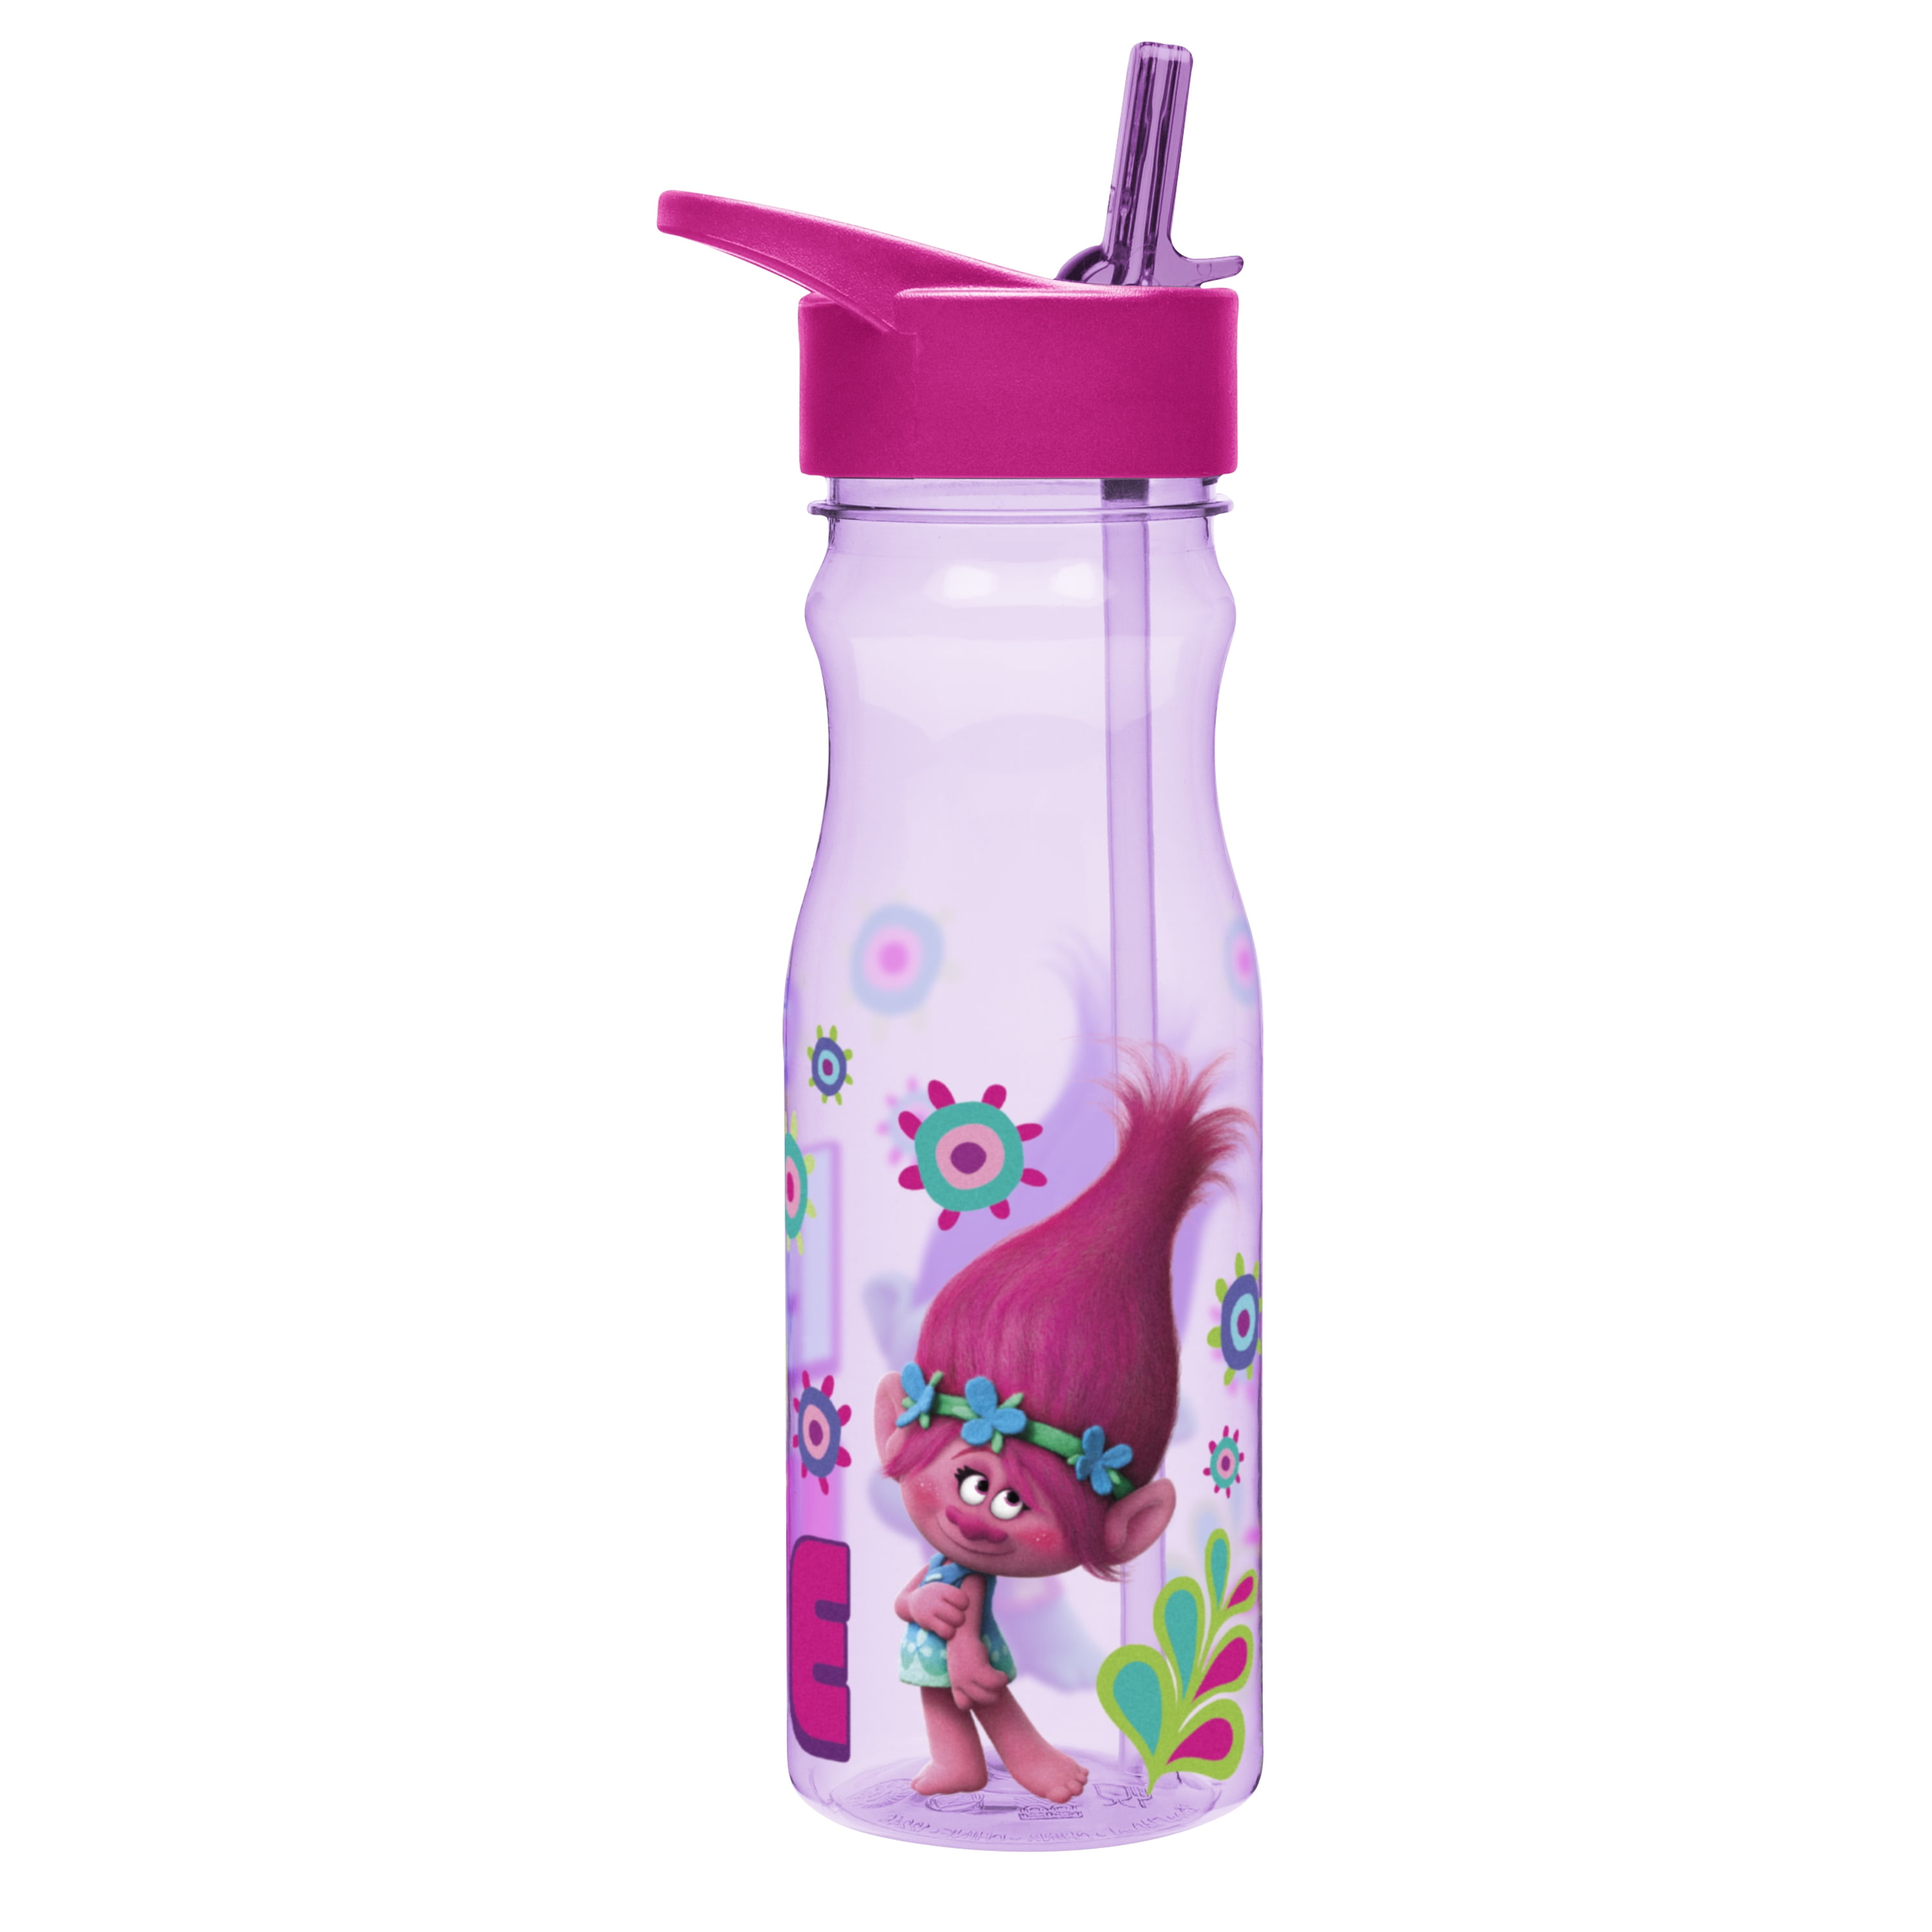 Trolls Poppy Pink Leak-Proof Plastic Water H2O Drink Bottle BPA Free NEW Zak 